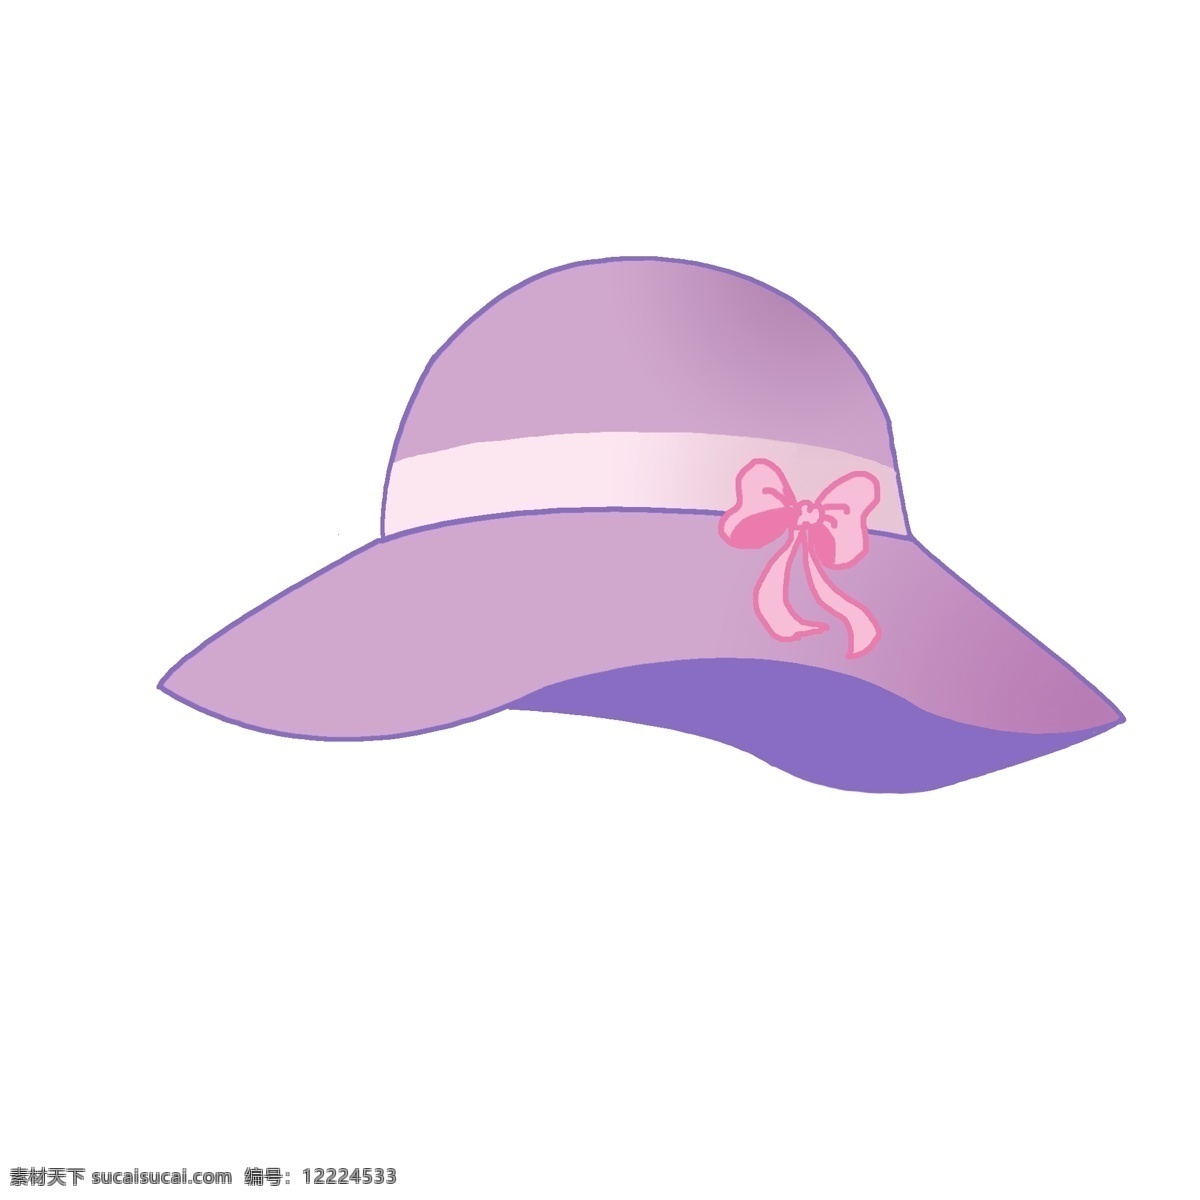 帽子 太阳帽 遮阳帽 紫色 手绘 可爱